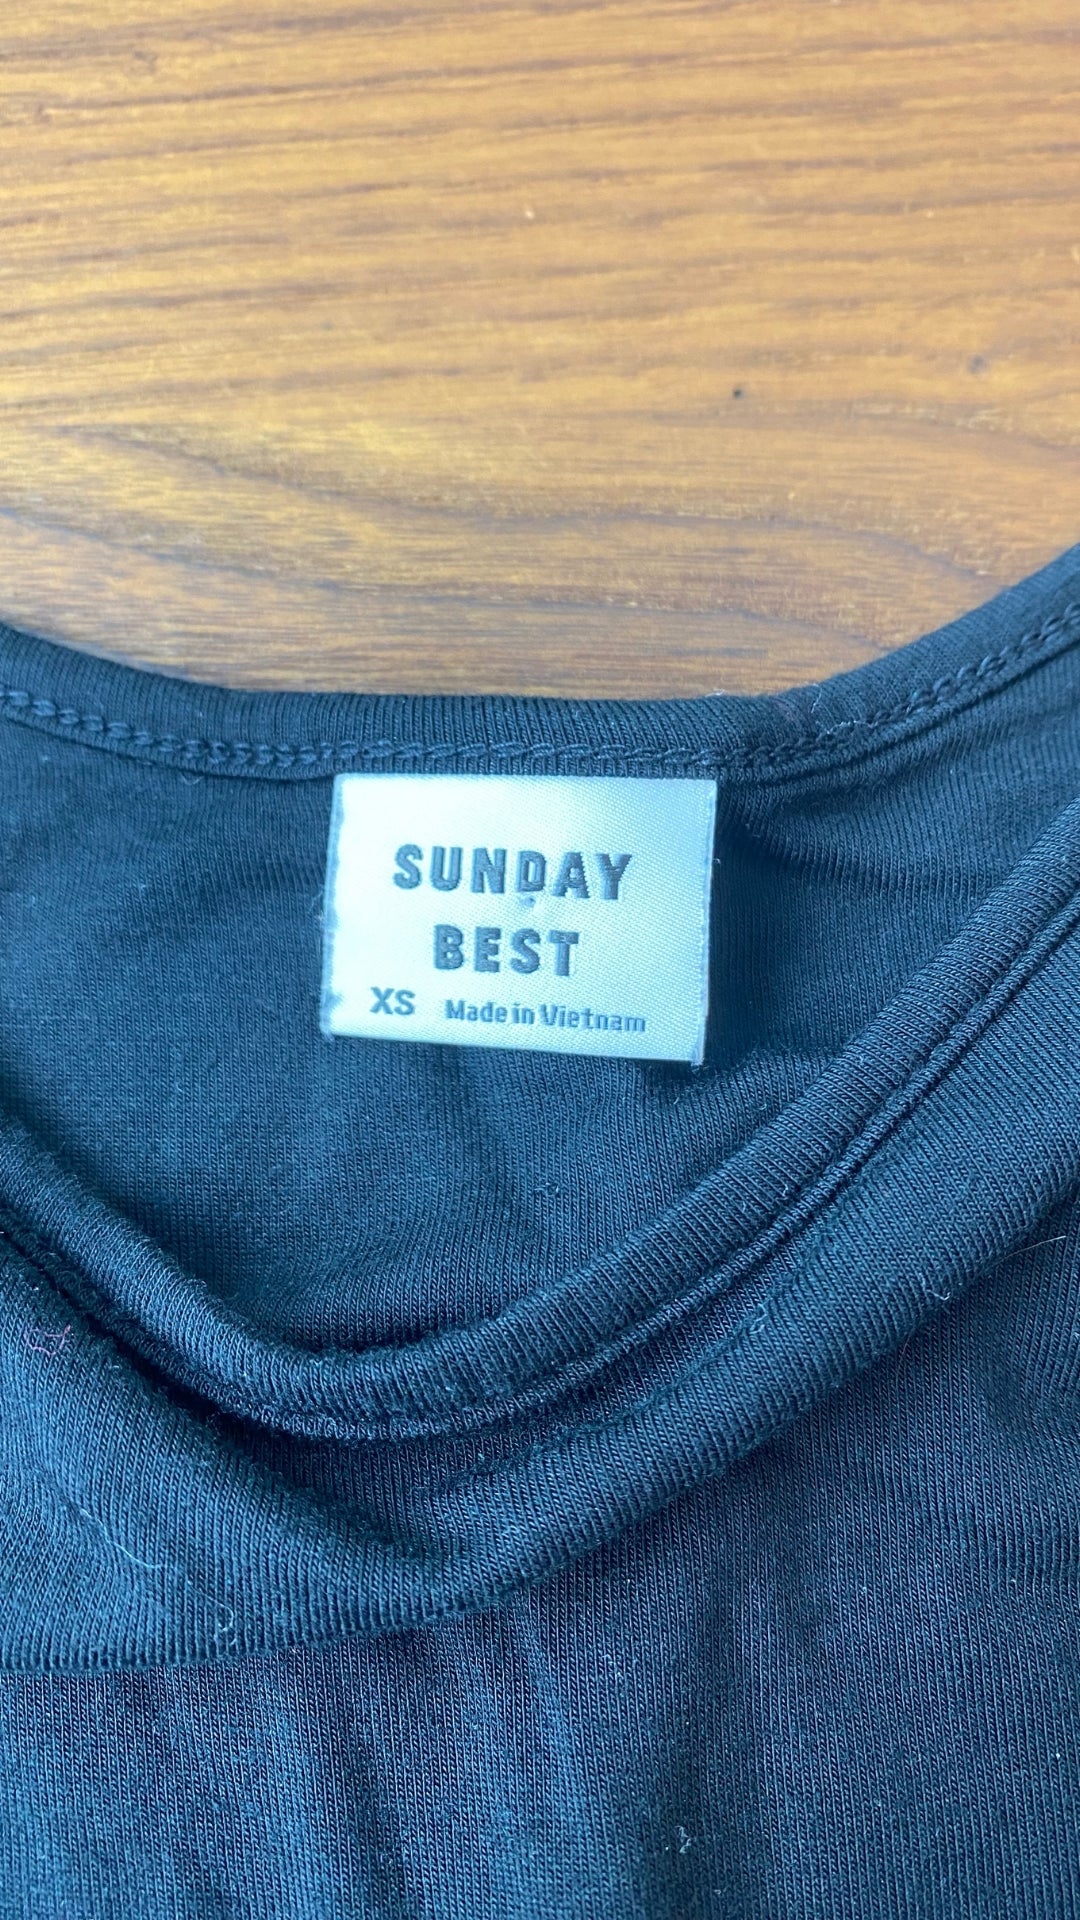 Robe noire jupe tournoyante à poches Sunday Best, taille xs. Vue de l'étiquette de marque et taille.